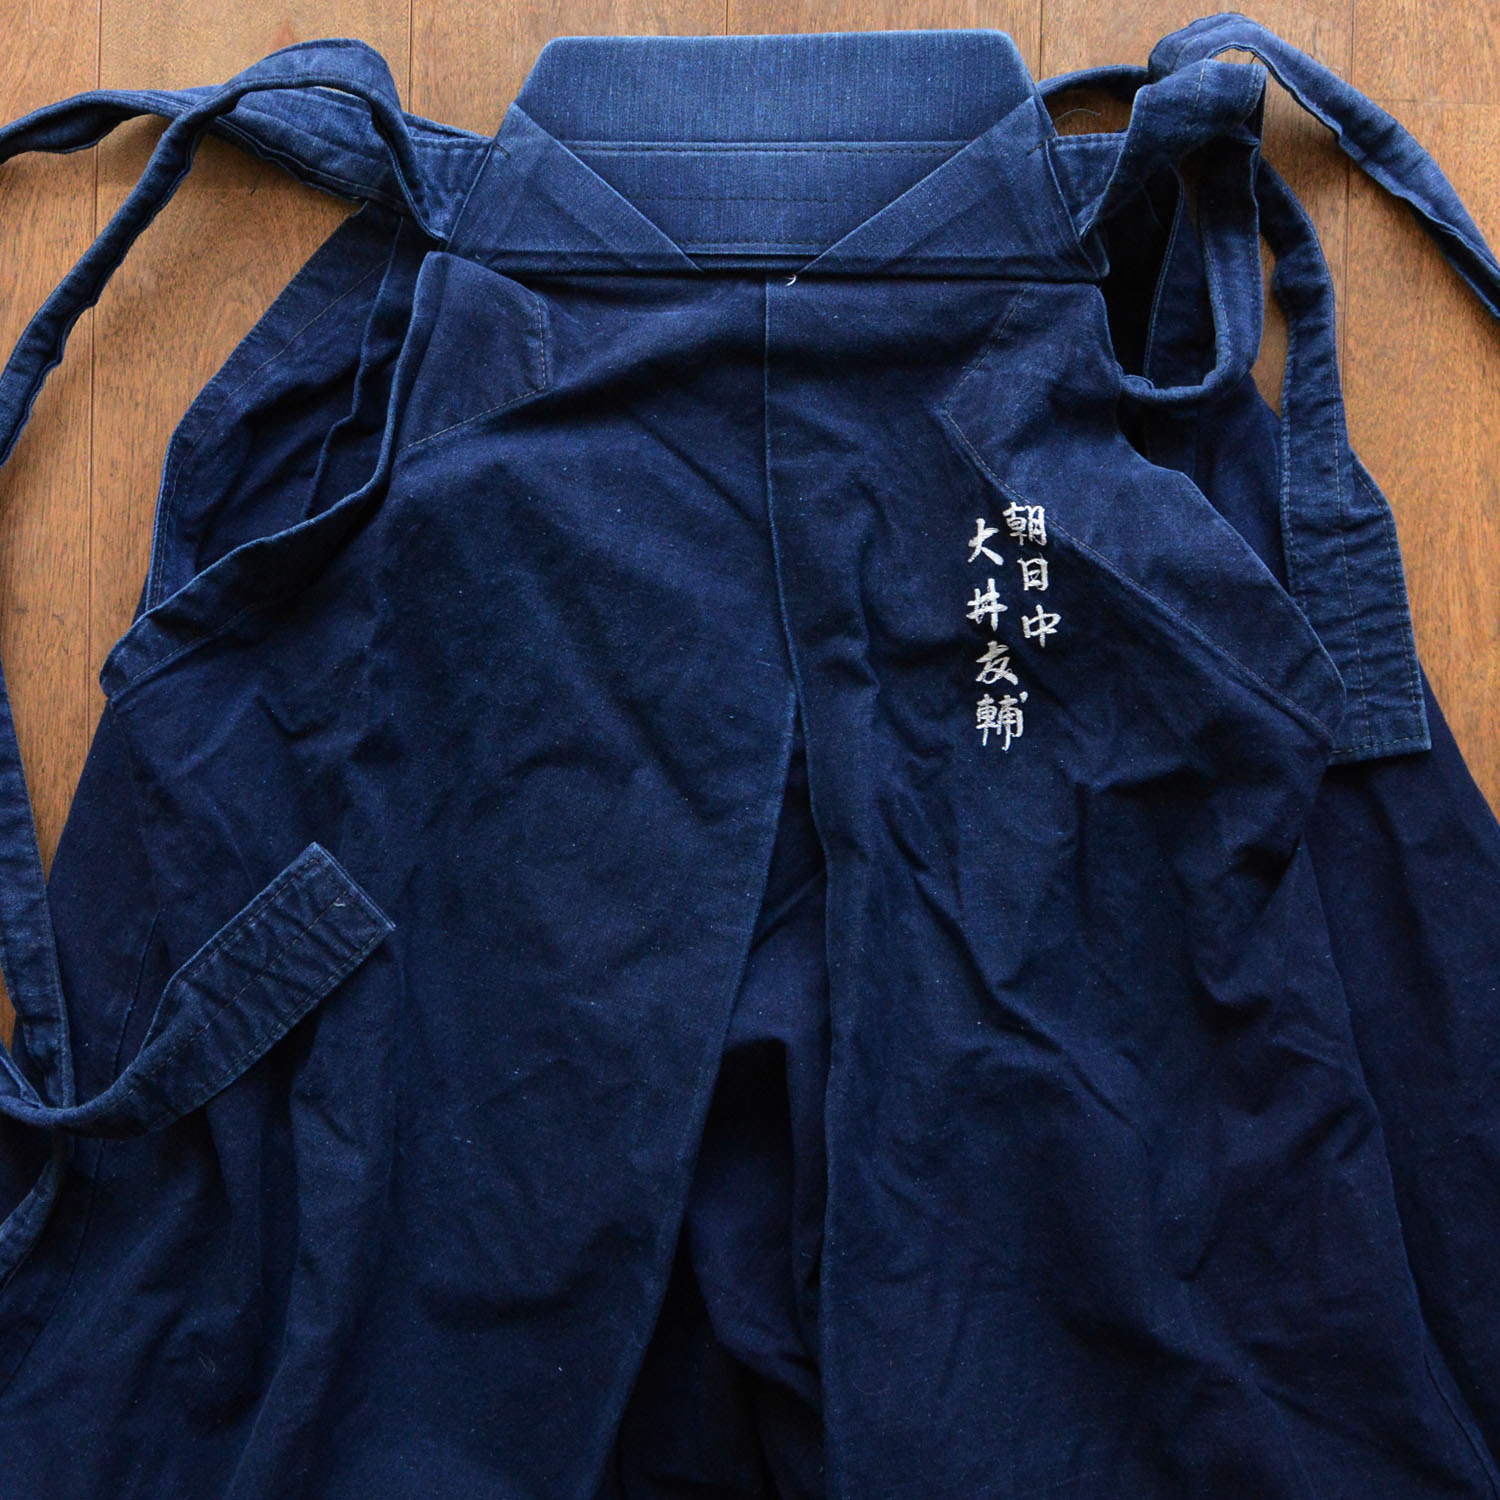 袴 パンツ 藍染 剣道着 木綿 ジャパンヴィンテージ 年代